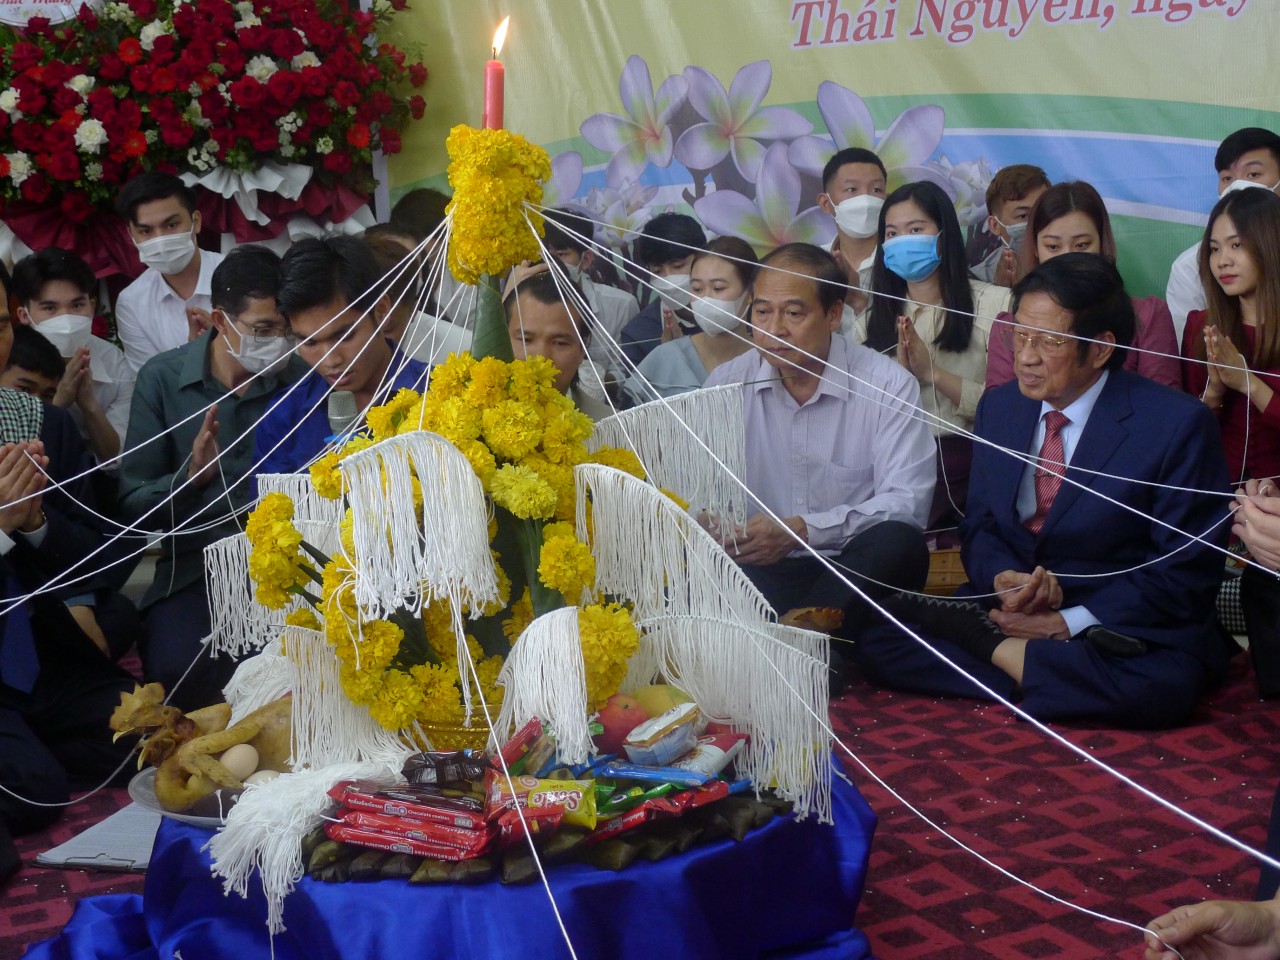 Lưu học sinh Lào, Campuchia tại Thái Nguyên vui Tết cổ truyền Bunpimay và Chol Chnam Thmay